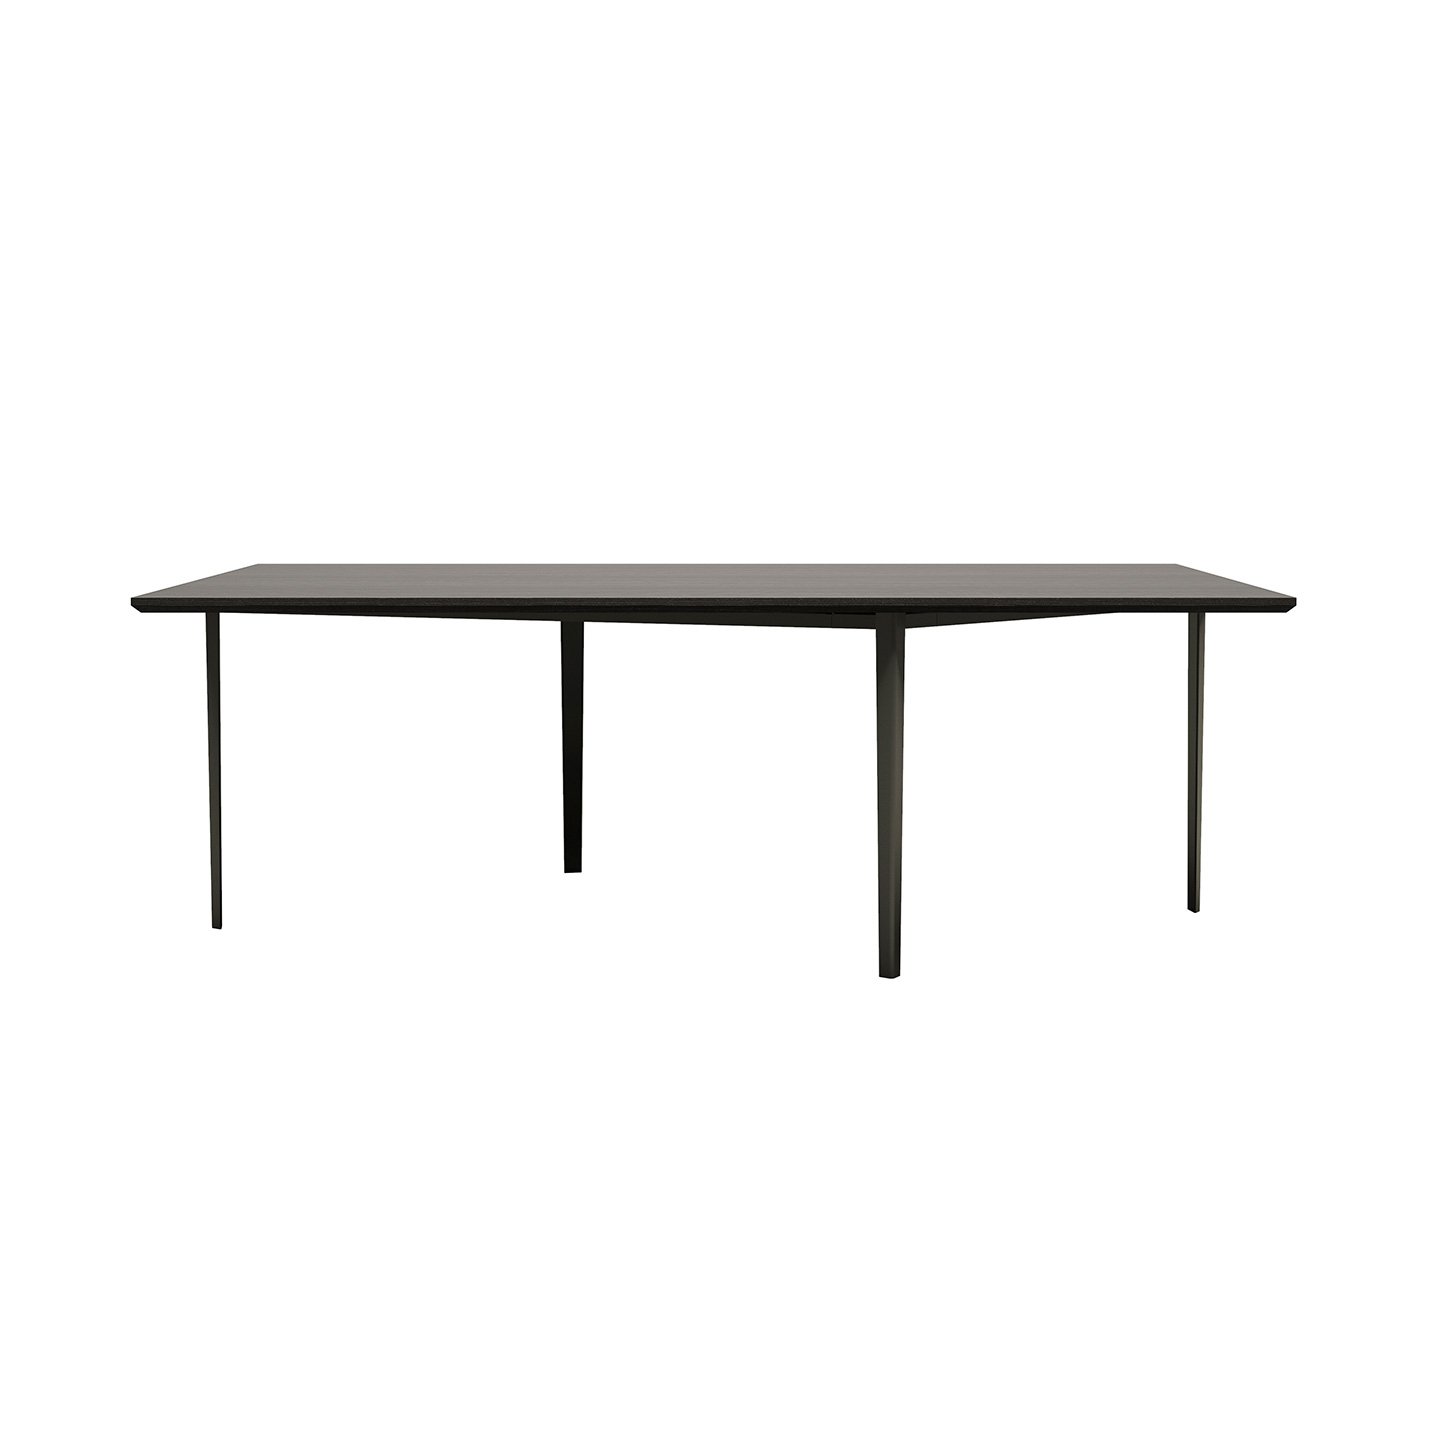 OpenUpミーティングテーブルは、レーザーカットされた塗装された金属ベースと、アッシュ合板の天板で構成されています。